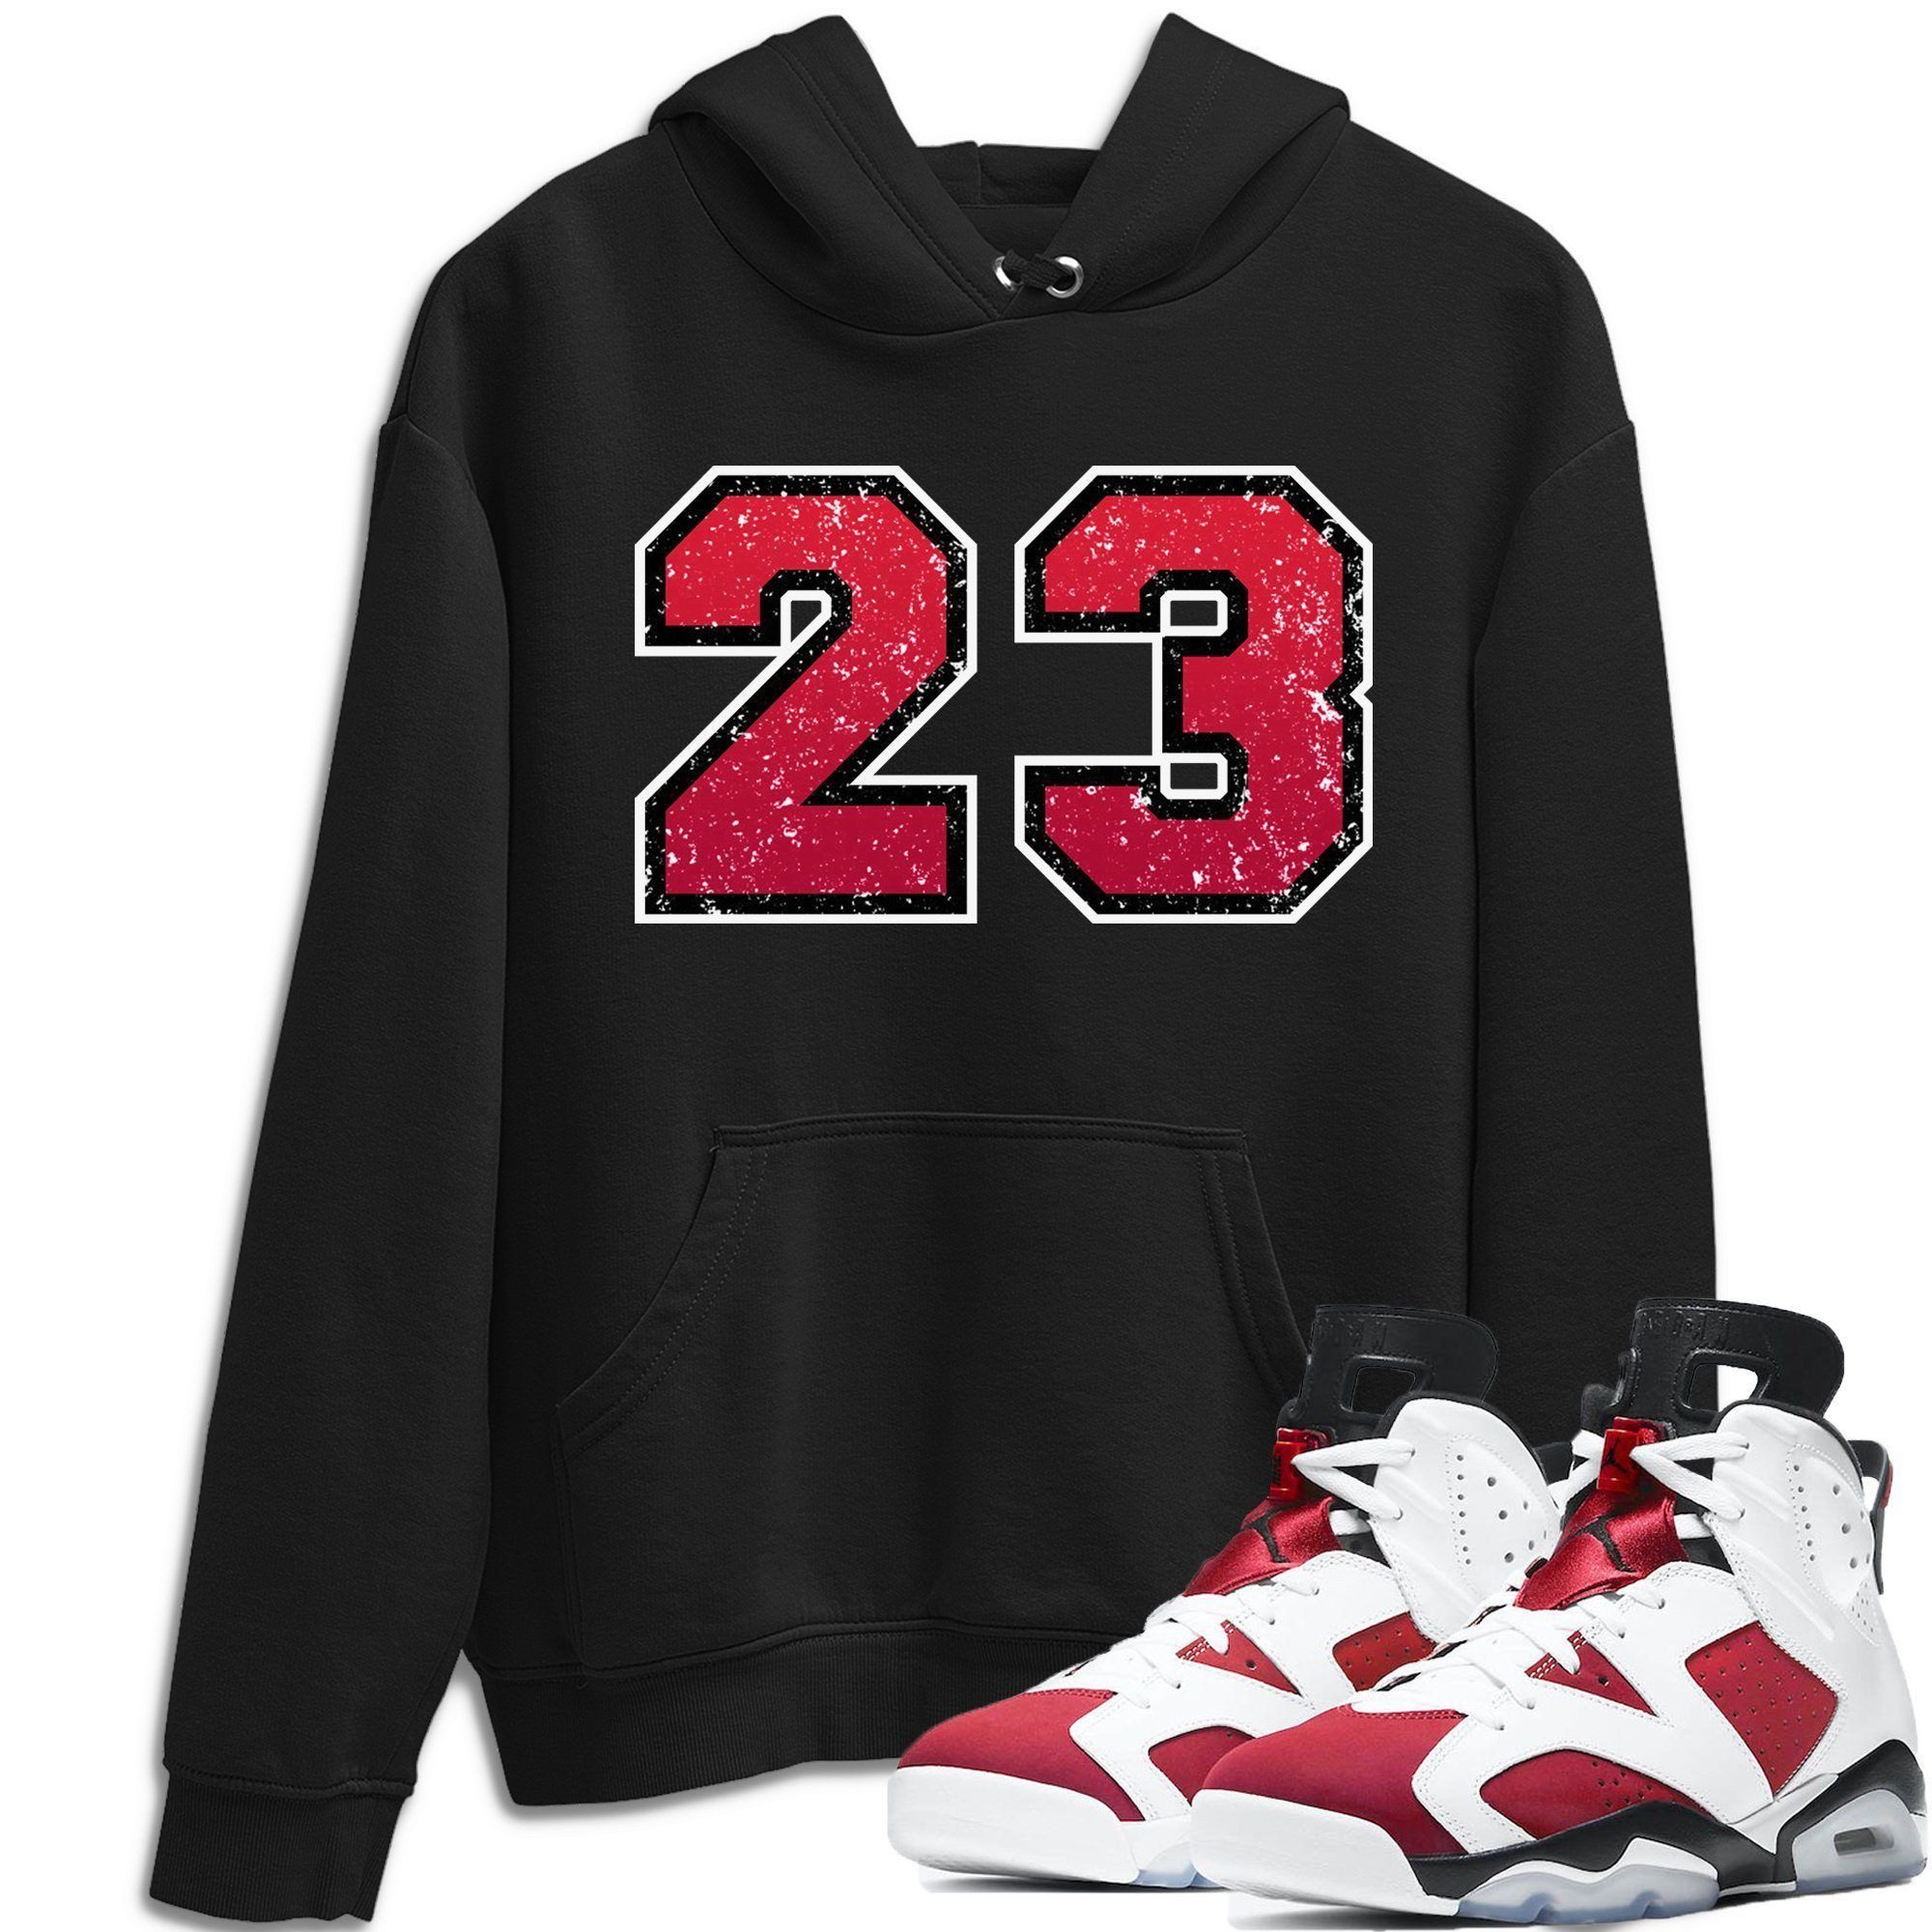 Distressed 23 Hoodie - Jordan 6 Carmine Outfit